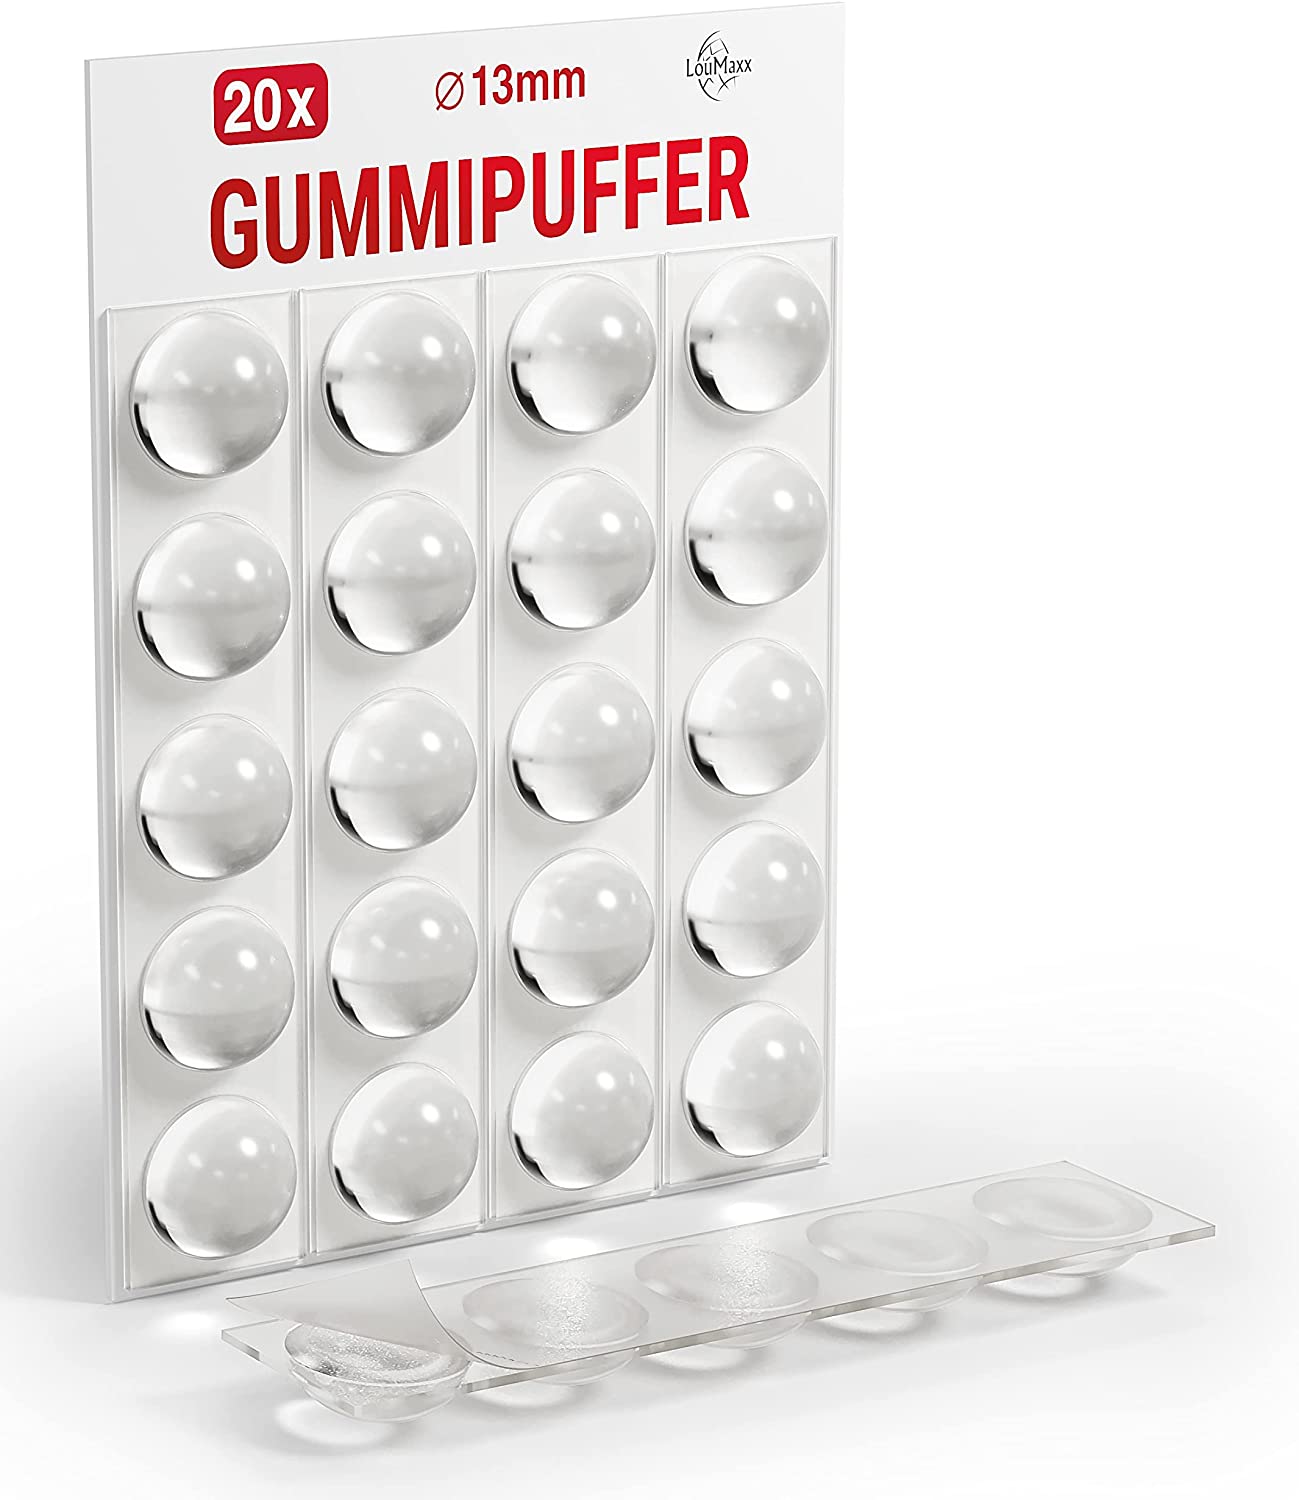 LouMaxx Gummipuffer - 20x Puffer transparent 13mm Ø - Gumminoppen für